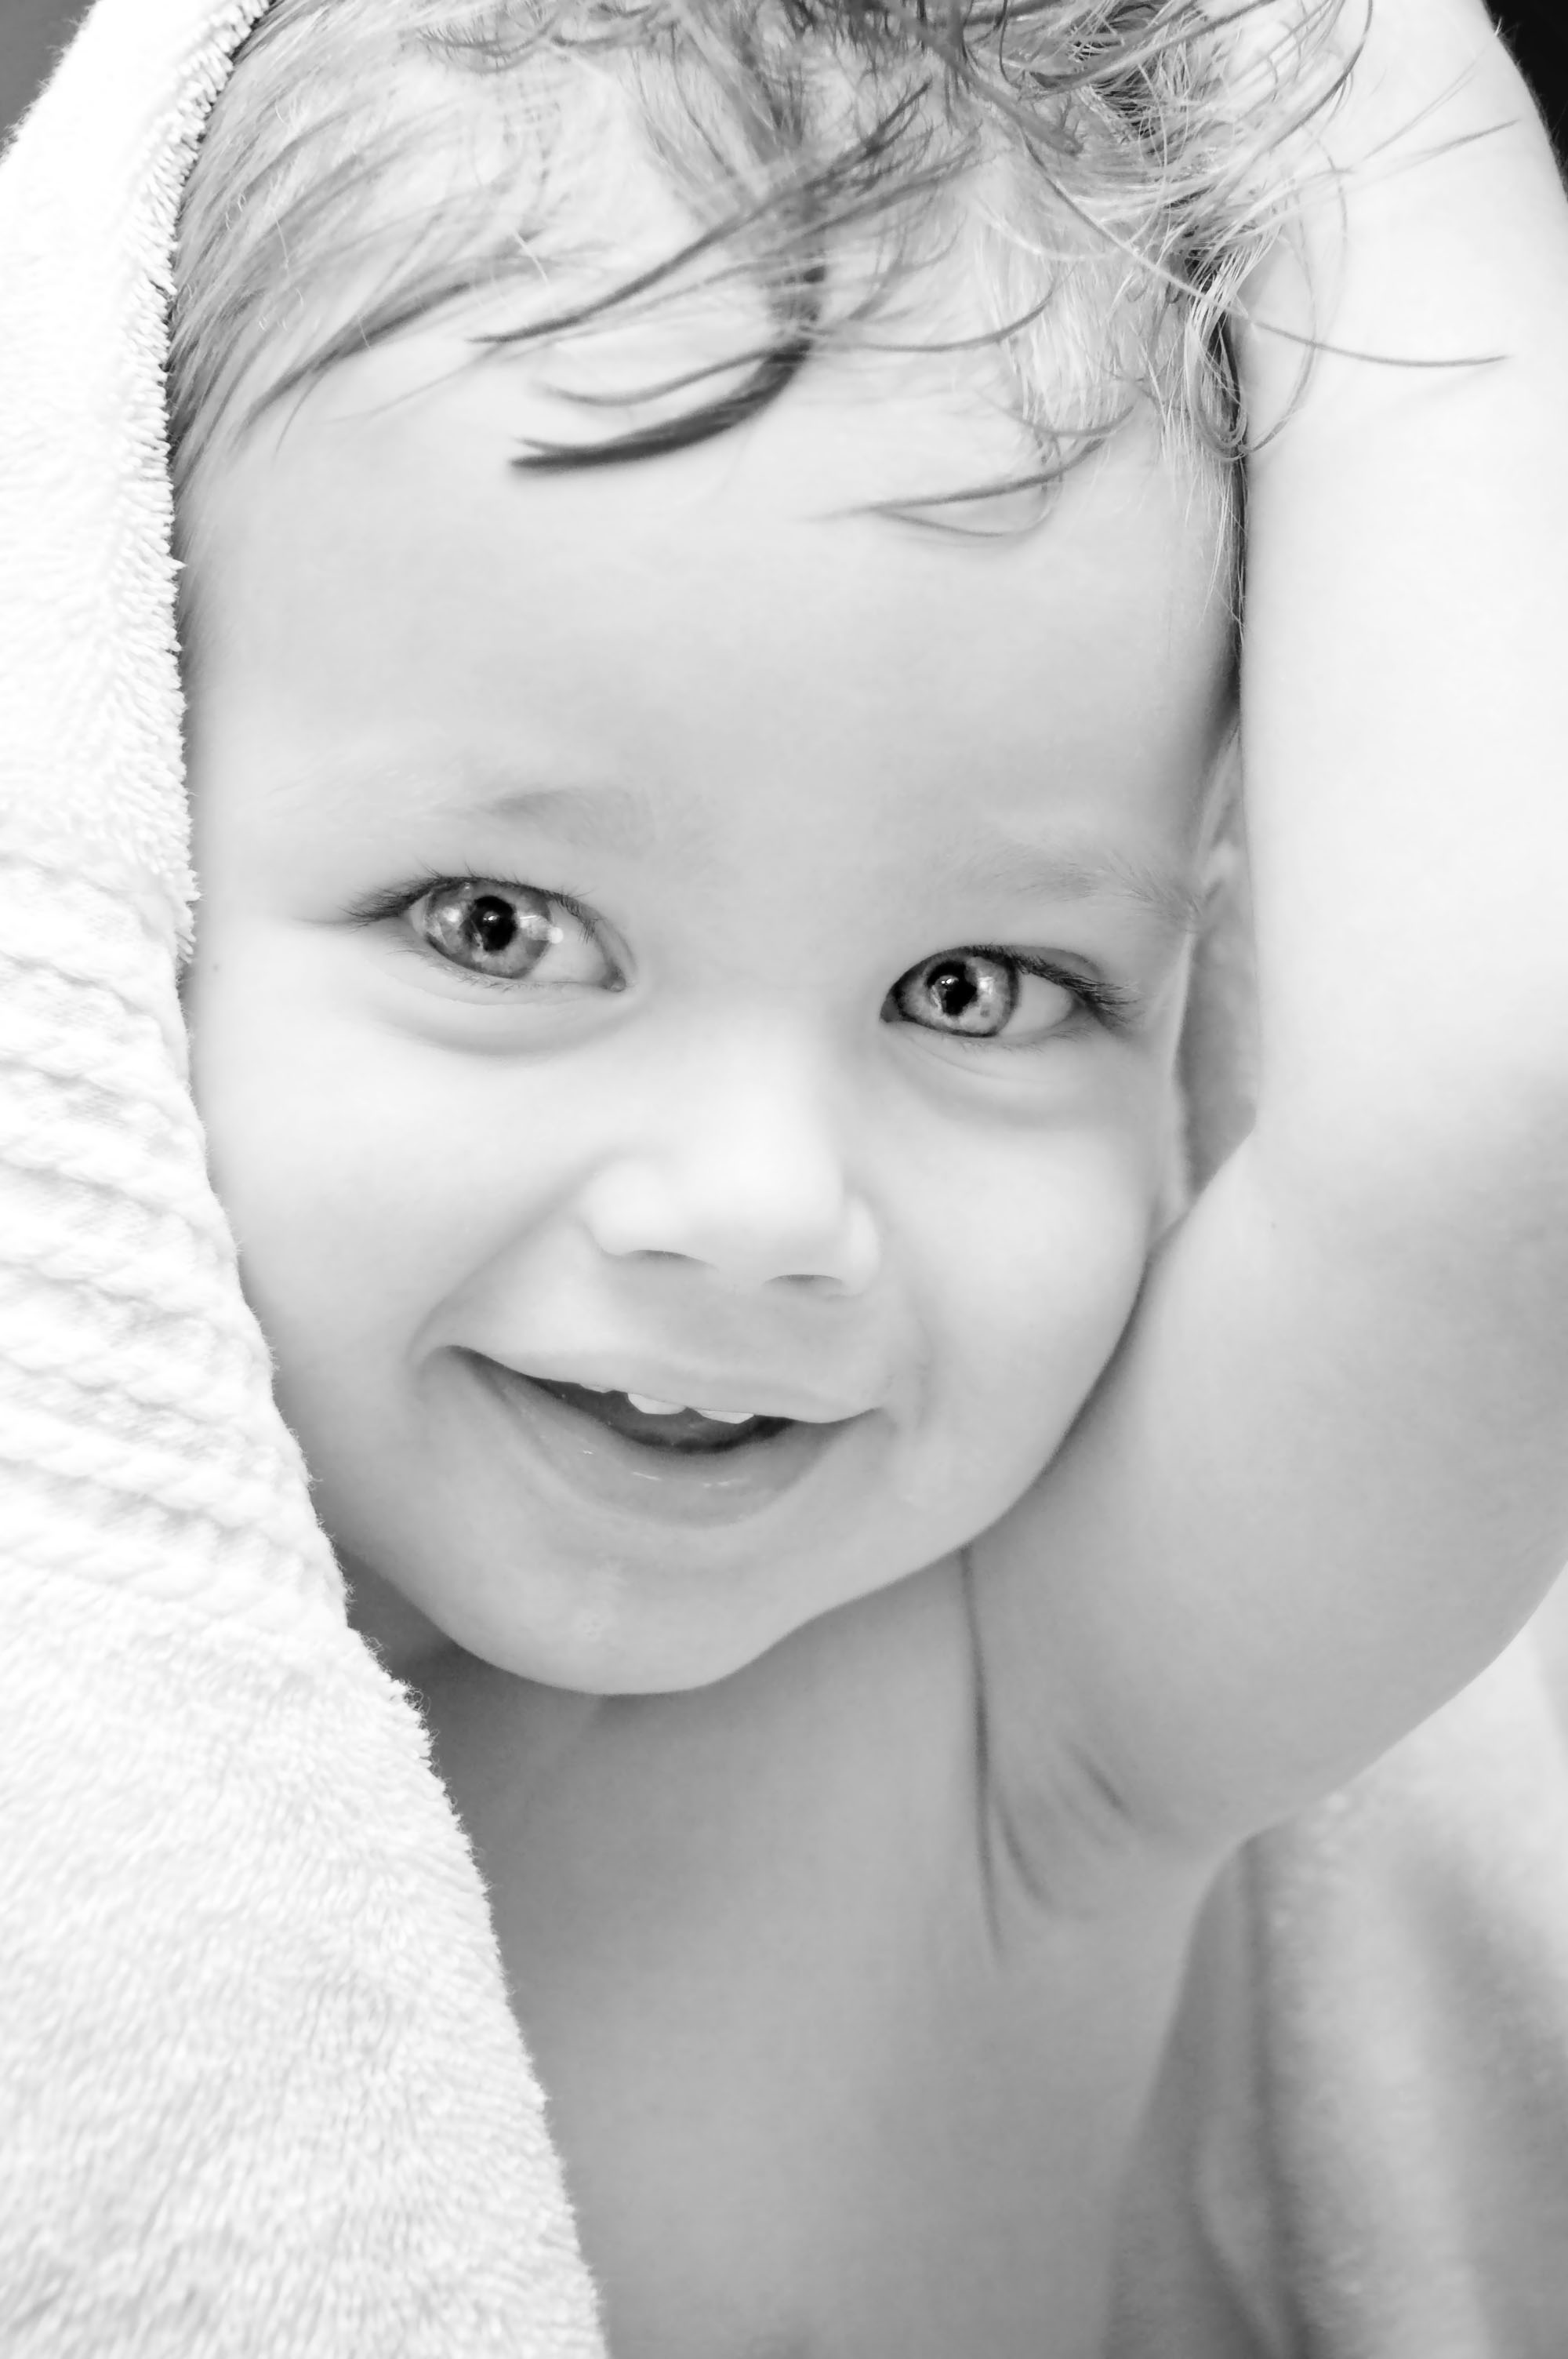 フリー画像人物写真子供ポートレイト赤ちゃん外国の子供モノクロ写真画像素材なら！無料・フリー写真素材のフリーフォト